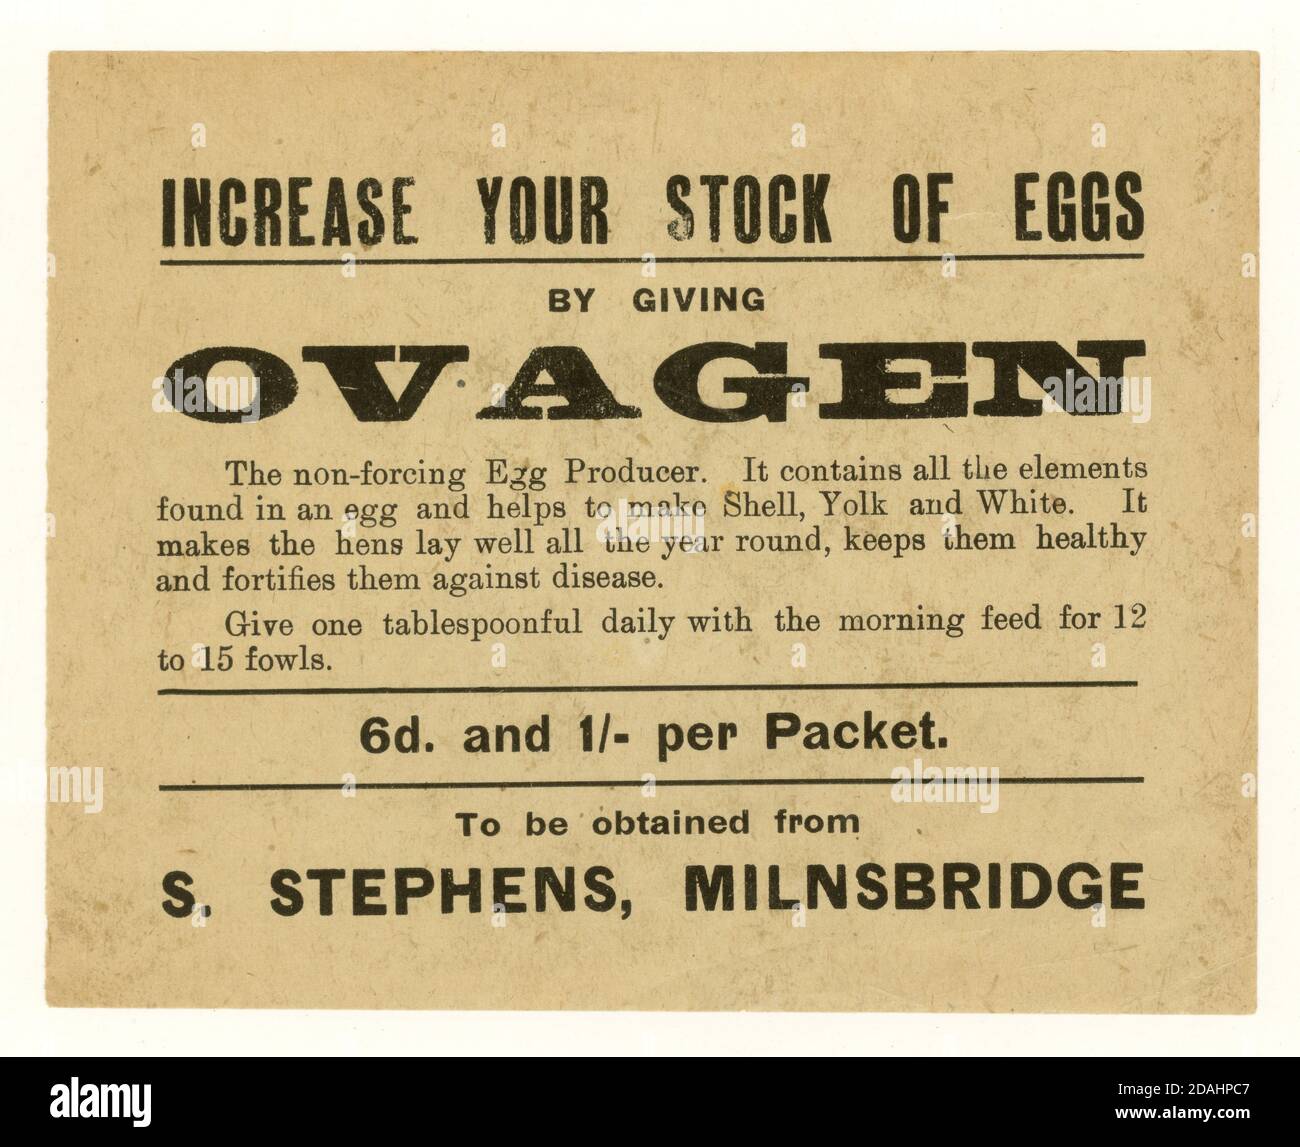 Brochure de production d'oeufs Ovagen début de 1900, Milnsbridge, Huddersfield, W. Yorkshire, Royaume-Uni vers 1920 Banque D'Images